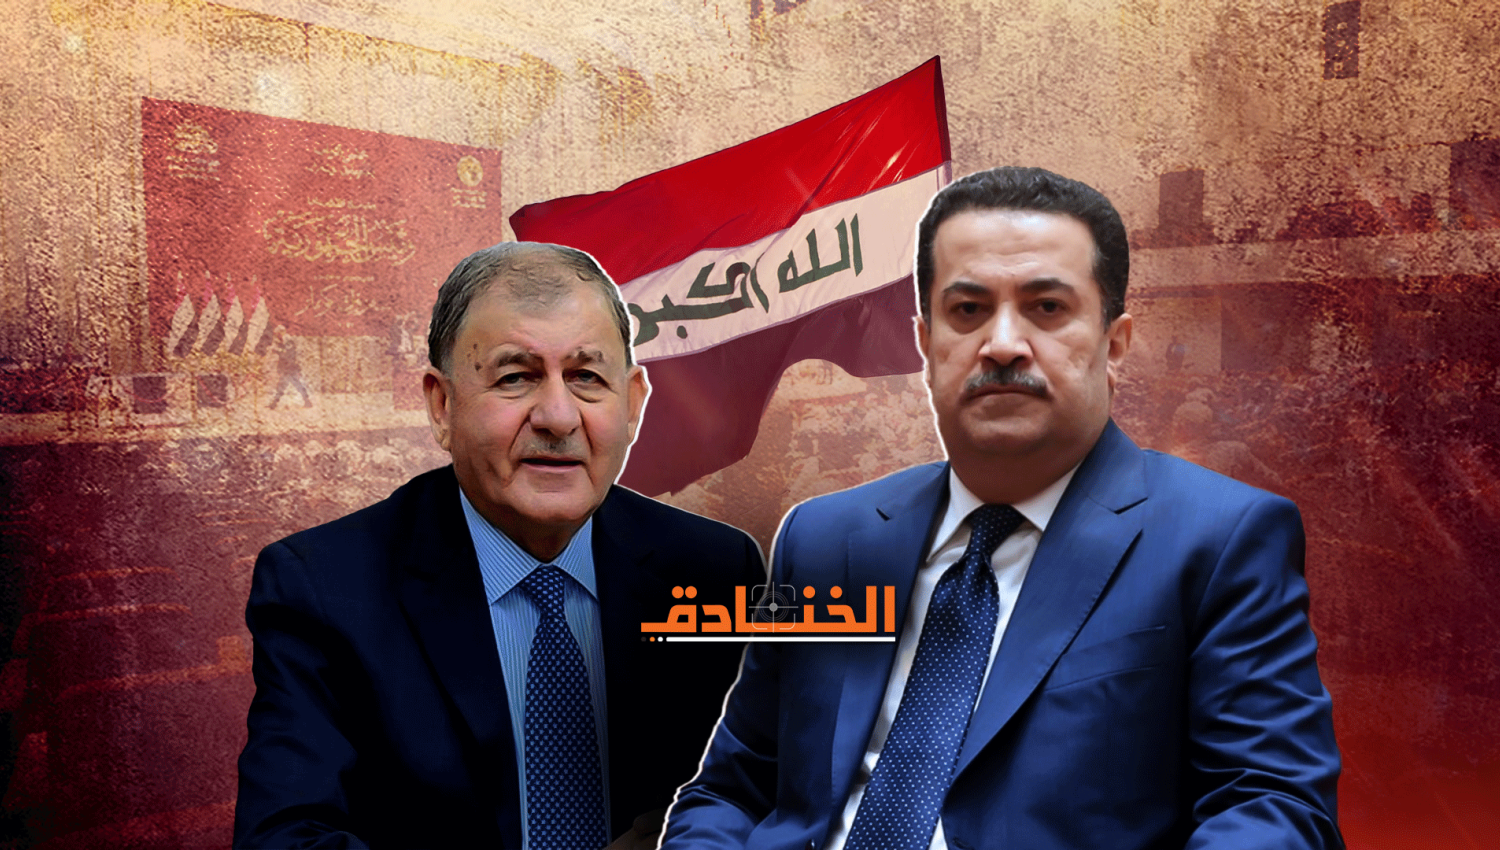 الخنادق - العراق بعد الرئاسة بانتظار "حكومة إنجاز"